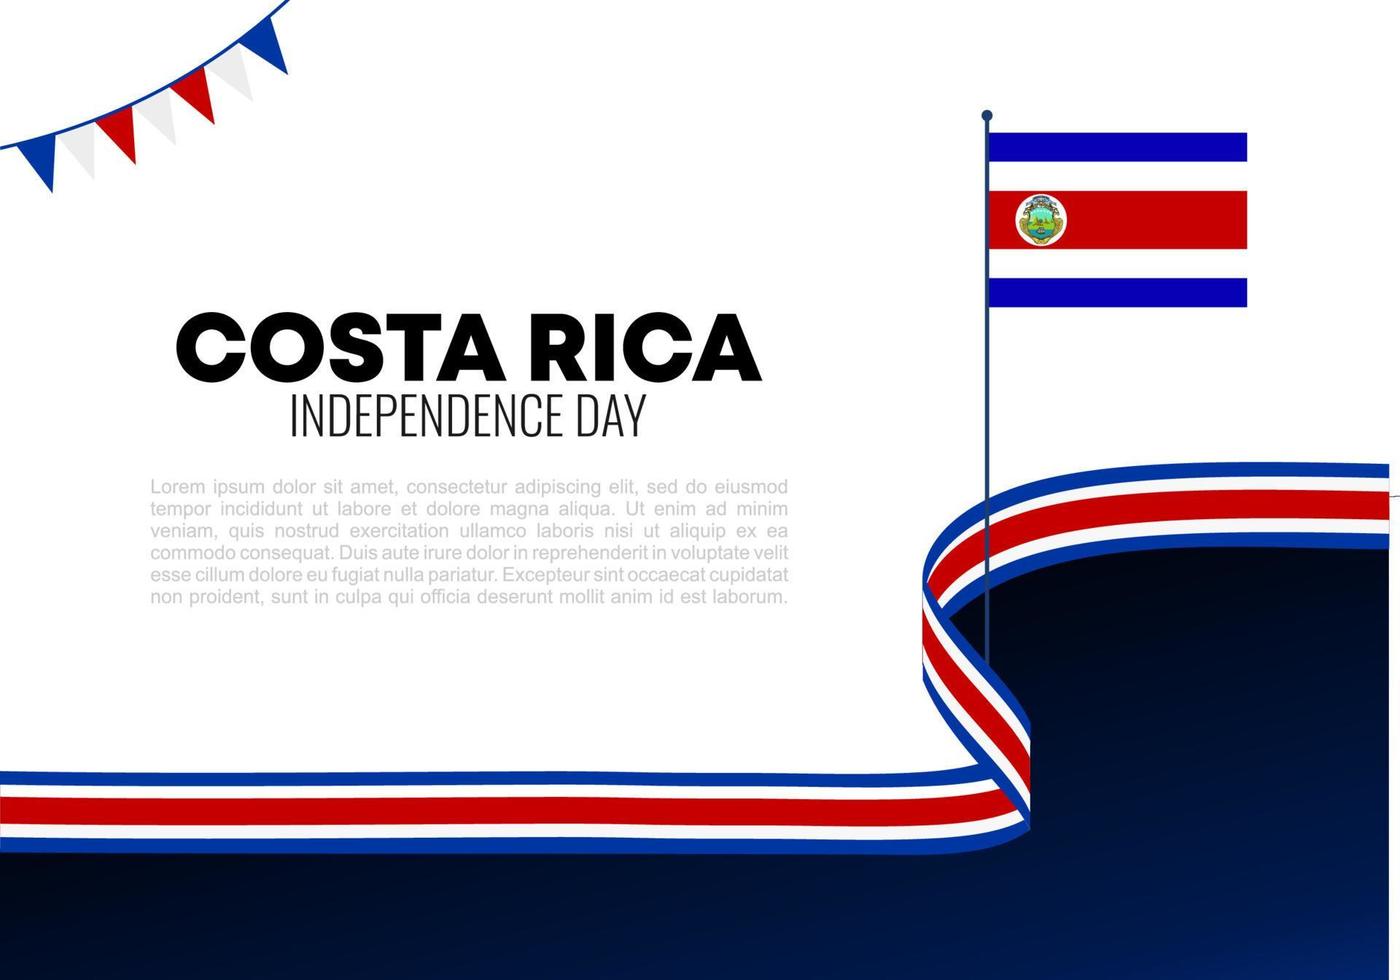 día de la independencia de costa rica para la celebración nacional el 15 de septiembre. vector